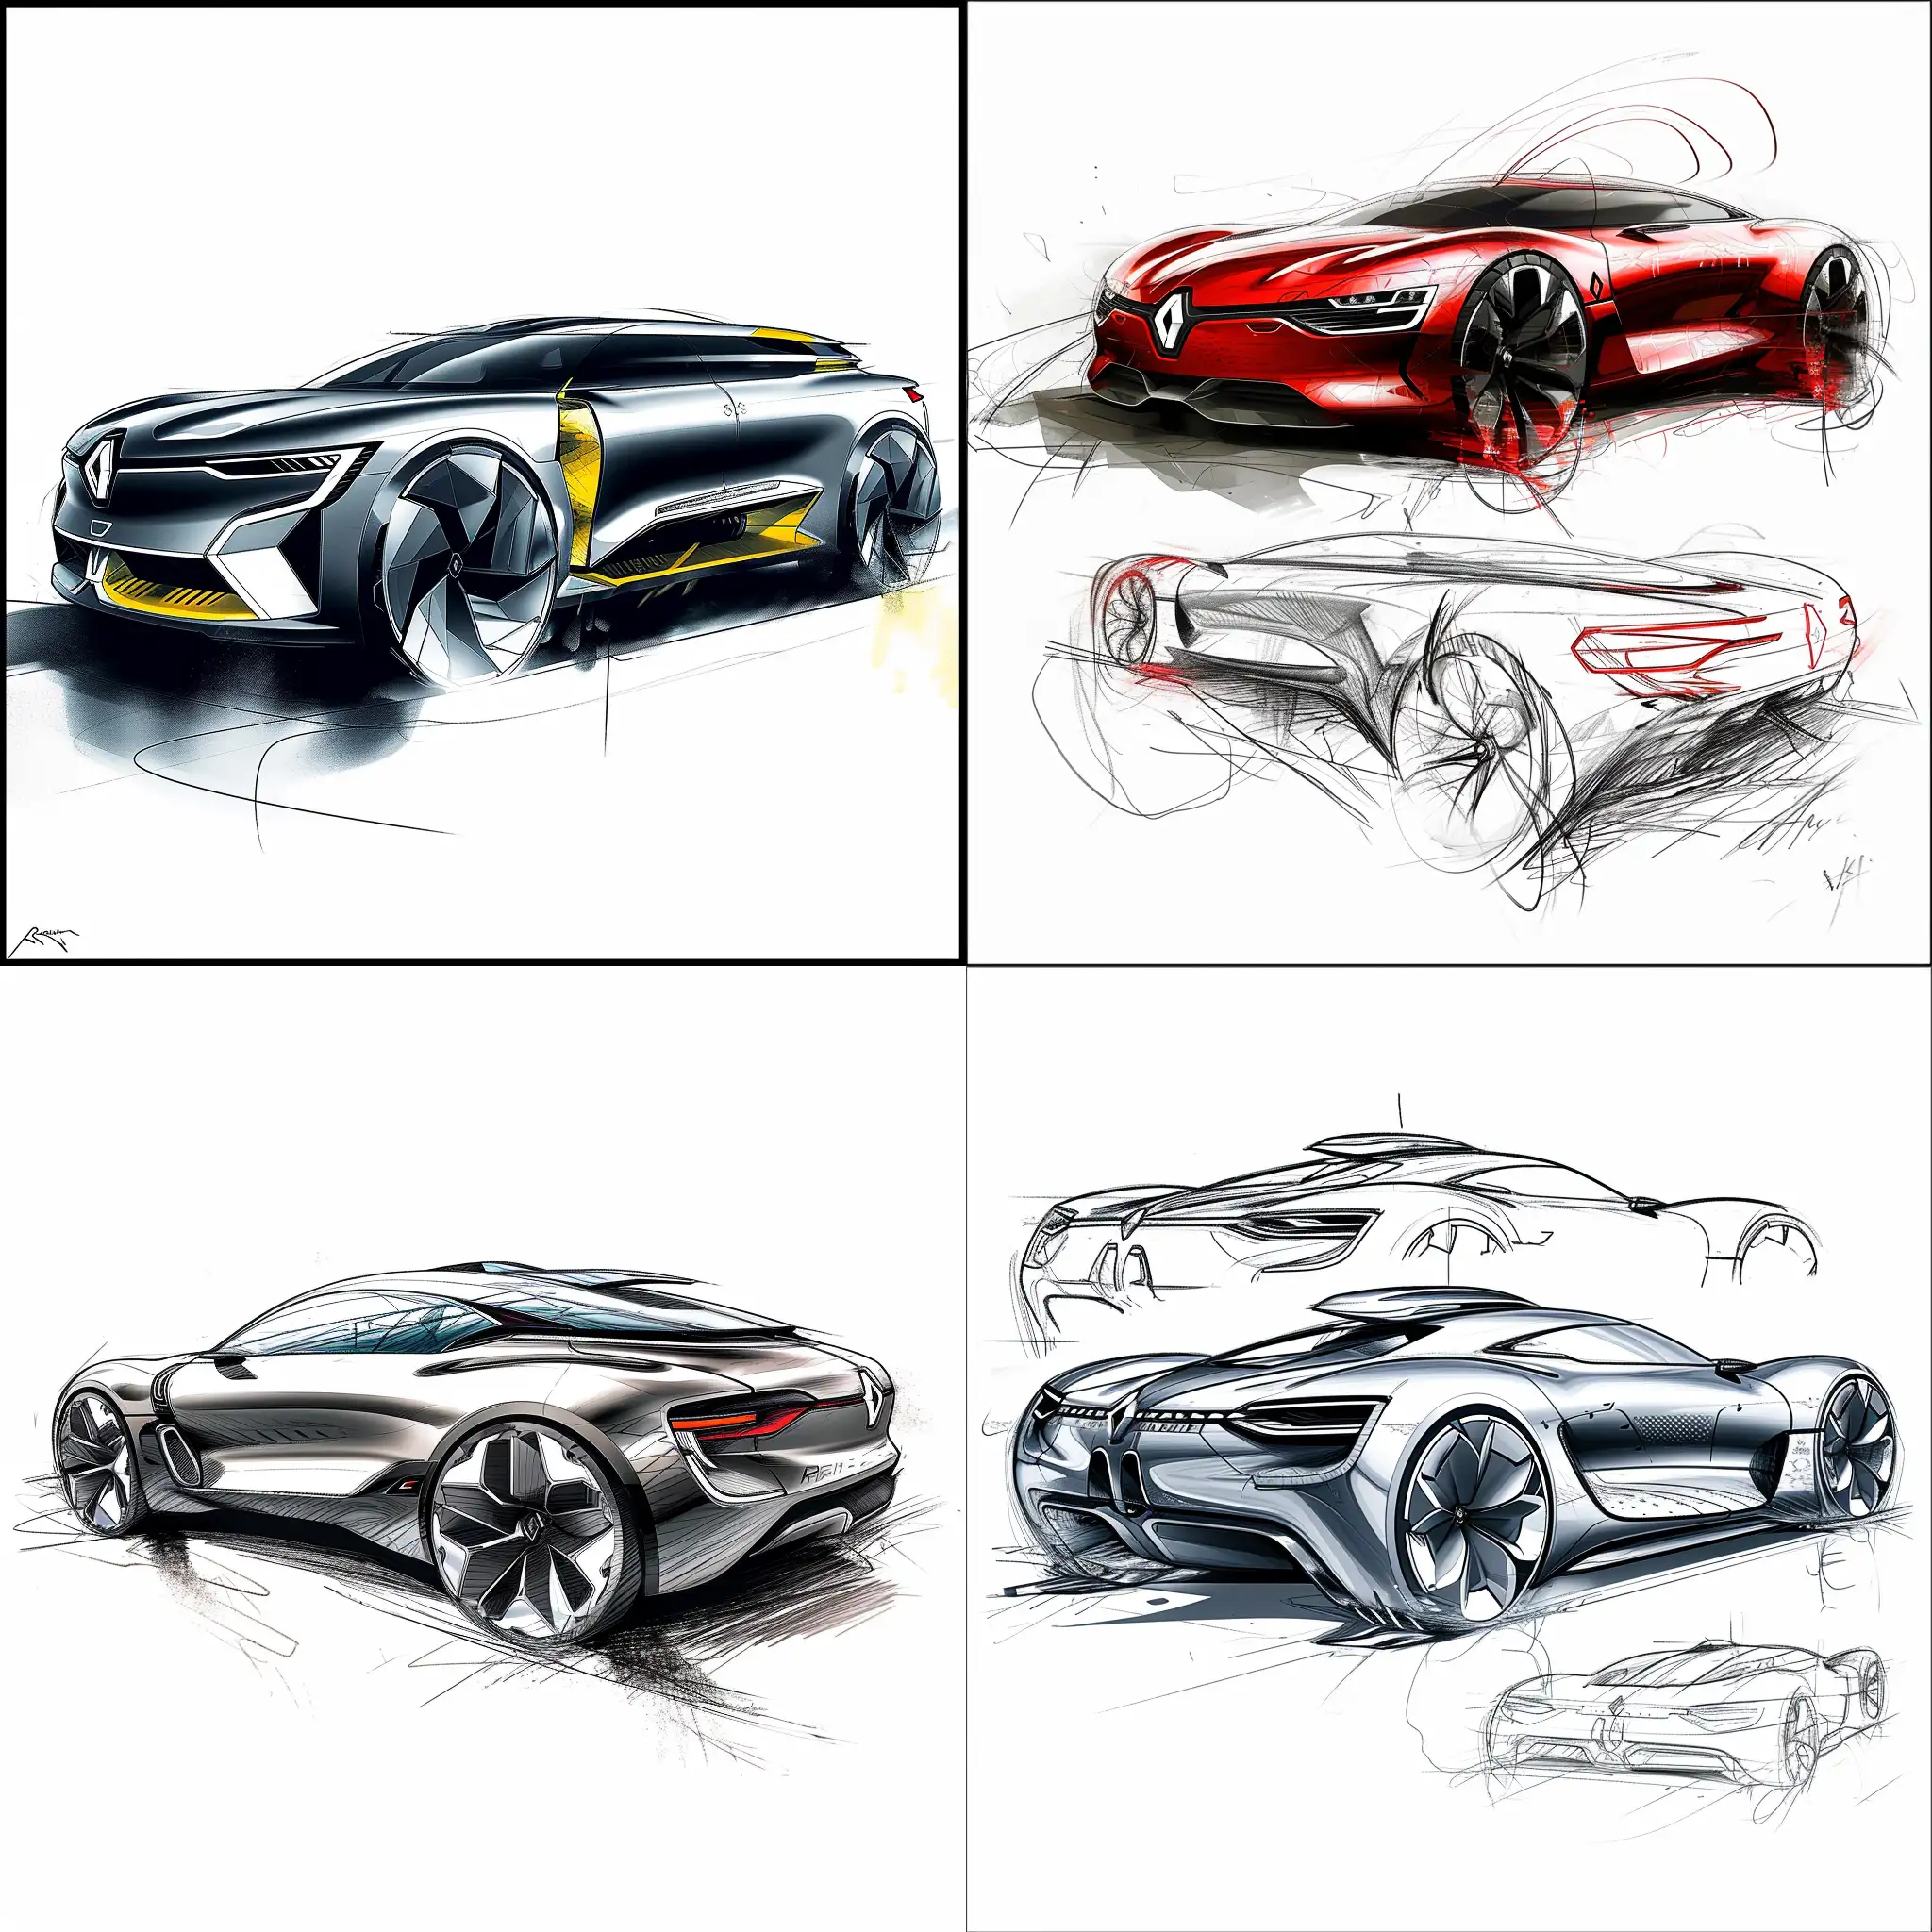 Futuristic-Renault-Car-Design-Sketches